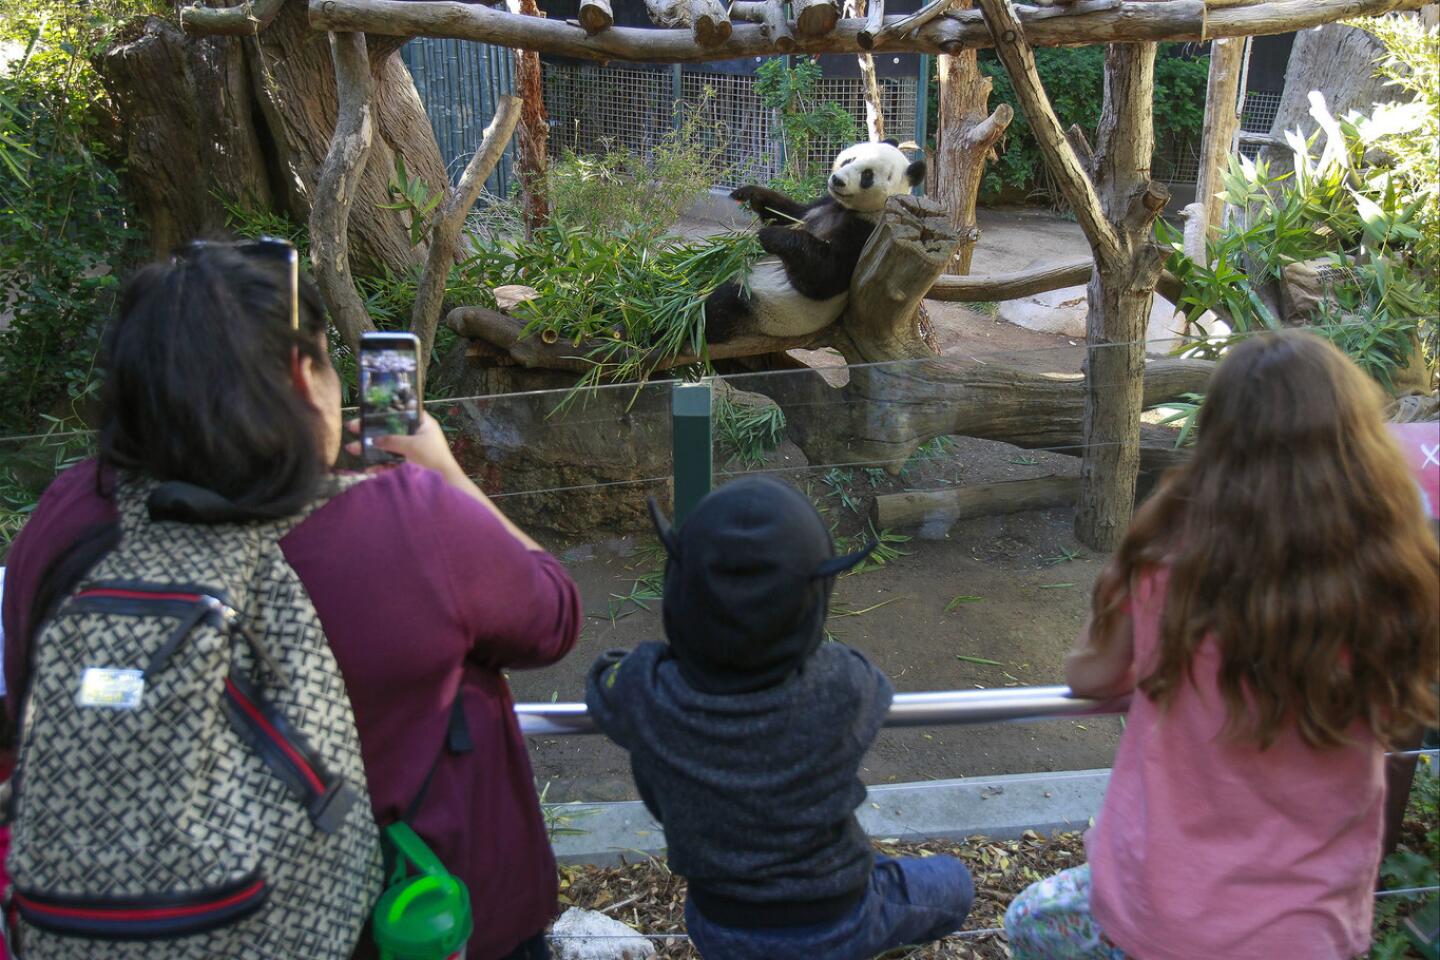 Giant panda Xiao Liwu at the San Diego Zoo.